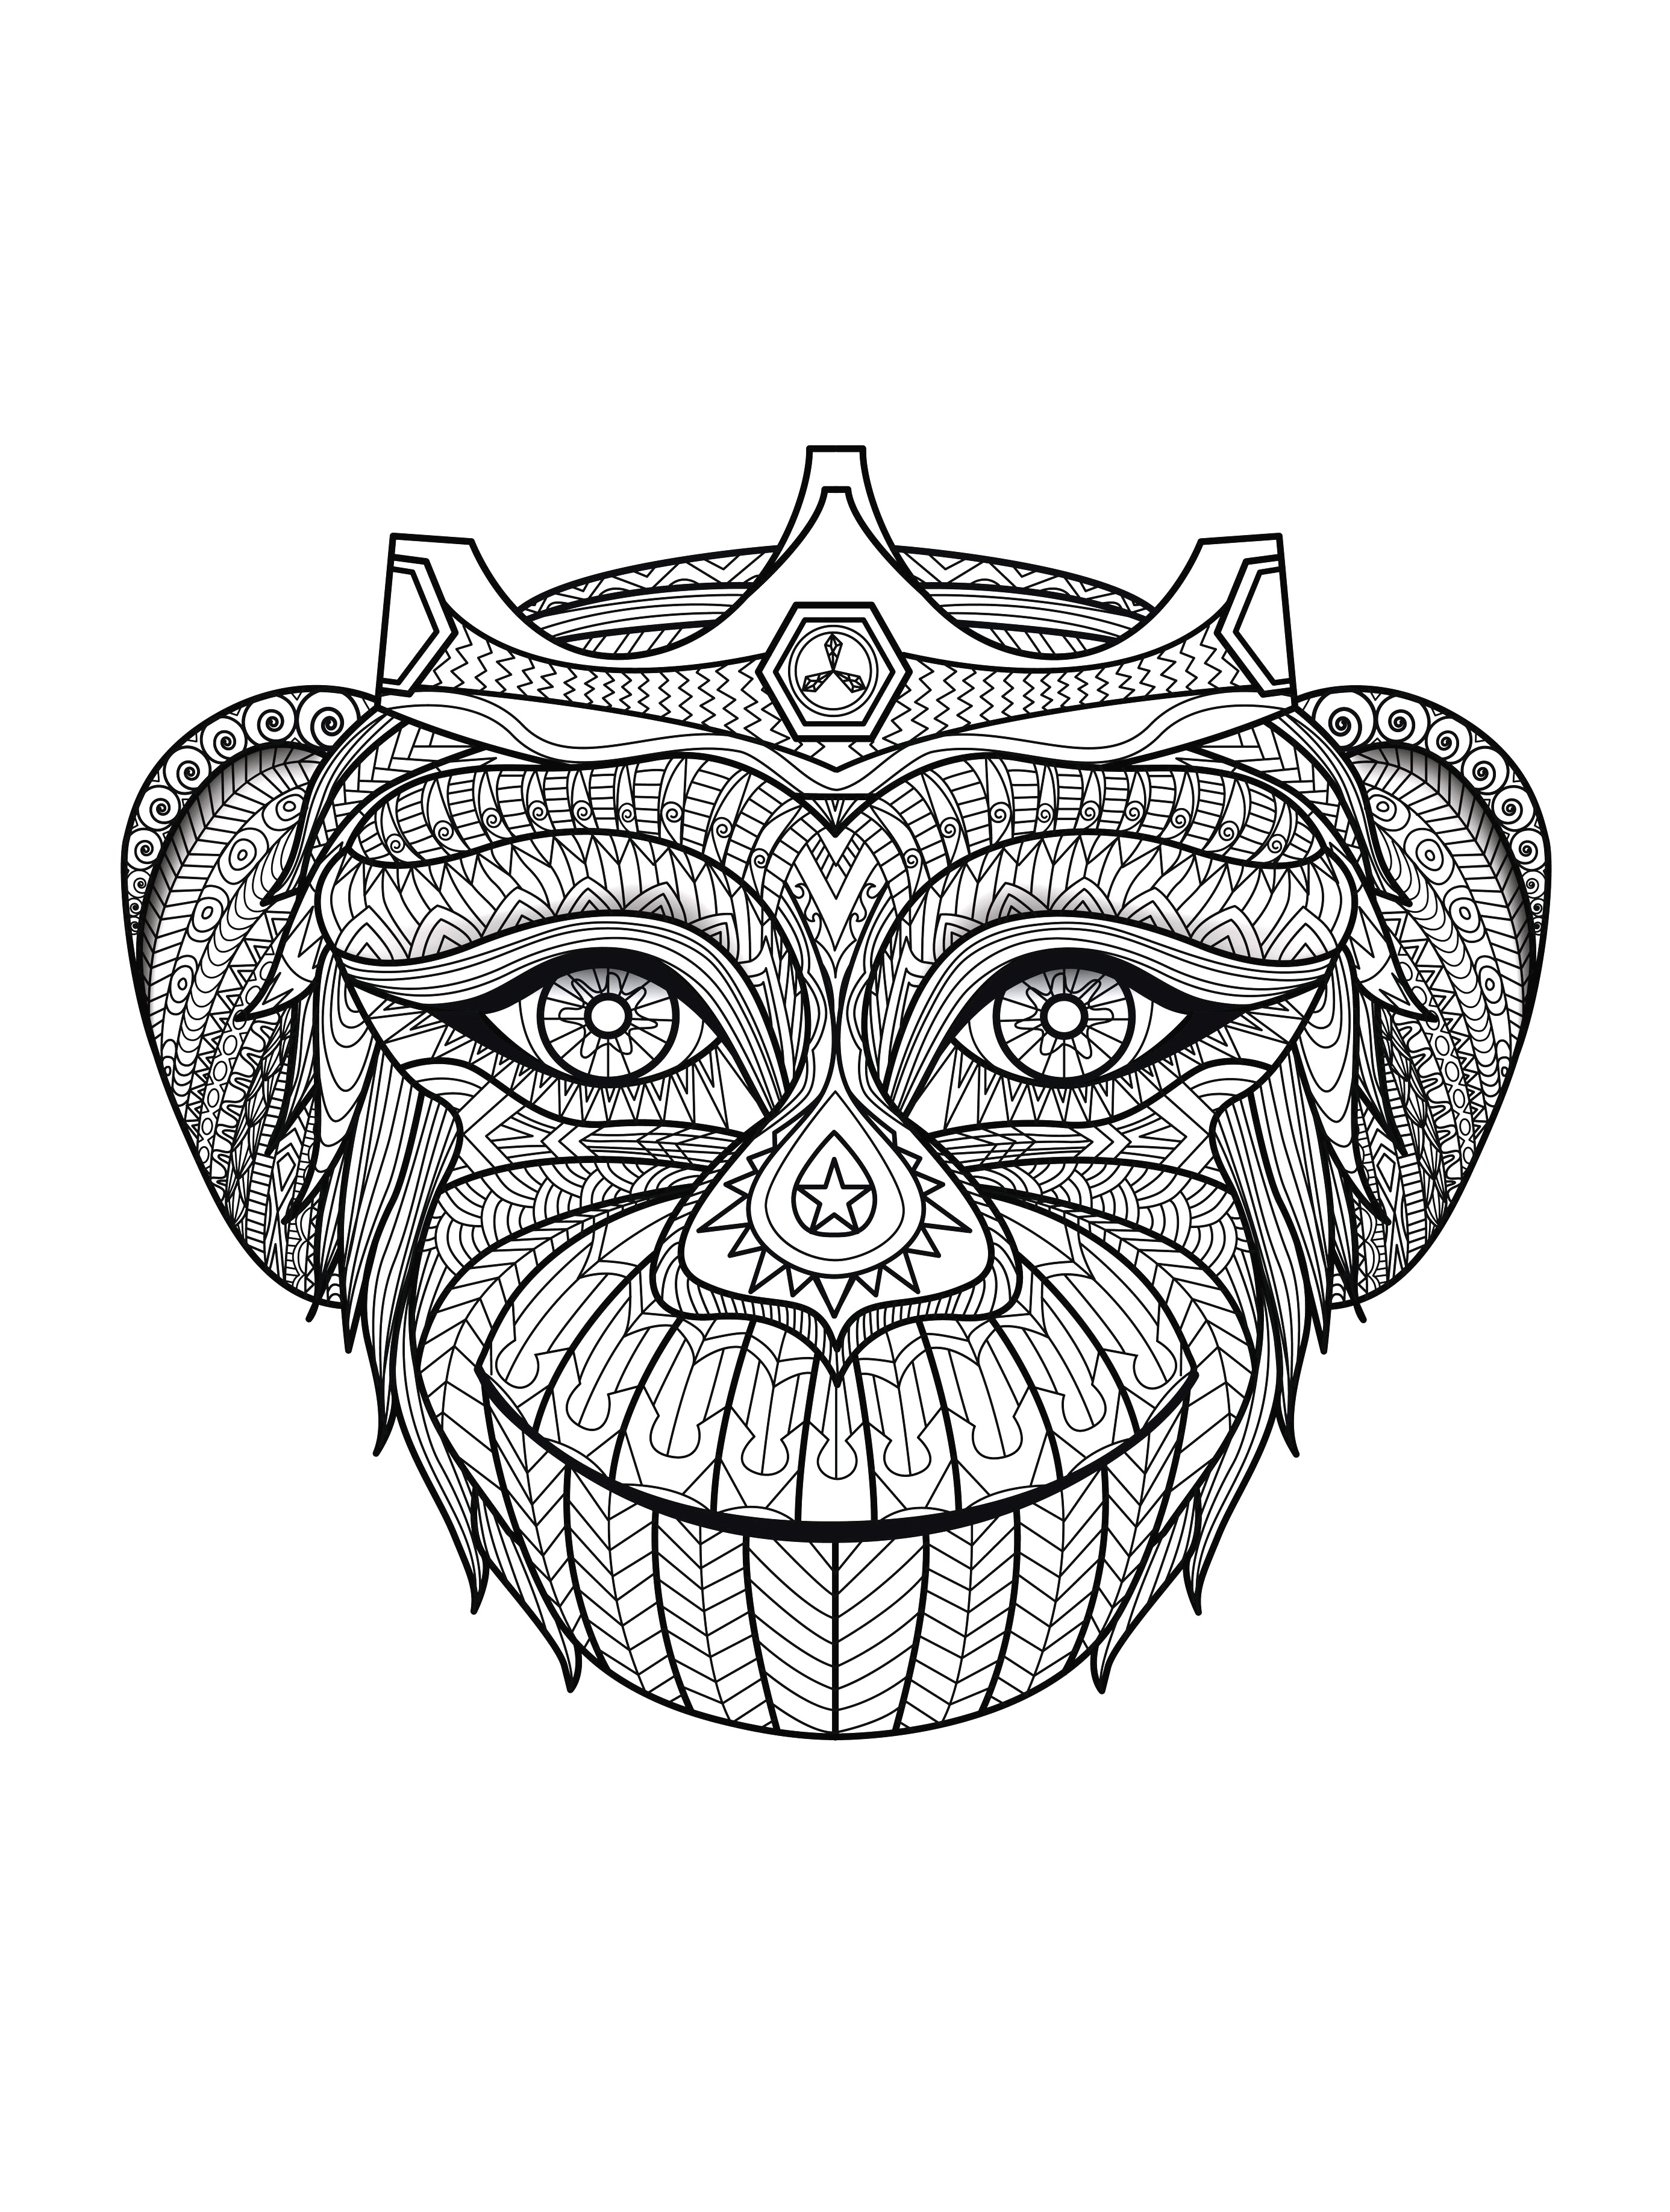 Desenhos para colorir para crianças de Macacos para imprimir, Artista : Bimdeedee   Fonte : 123rf